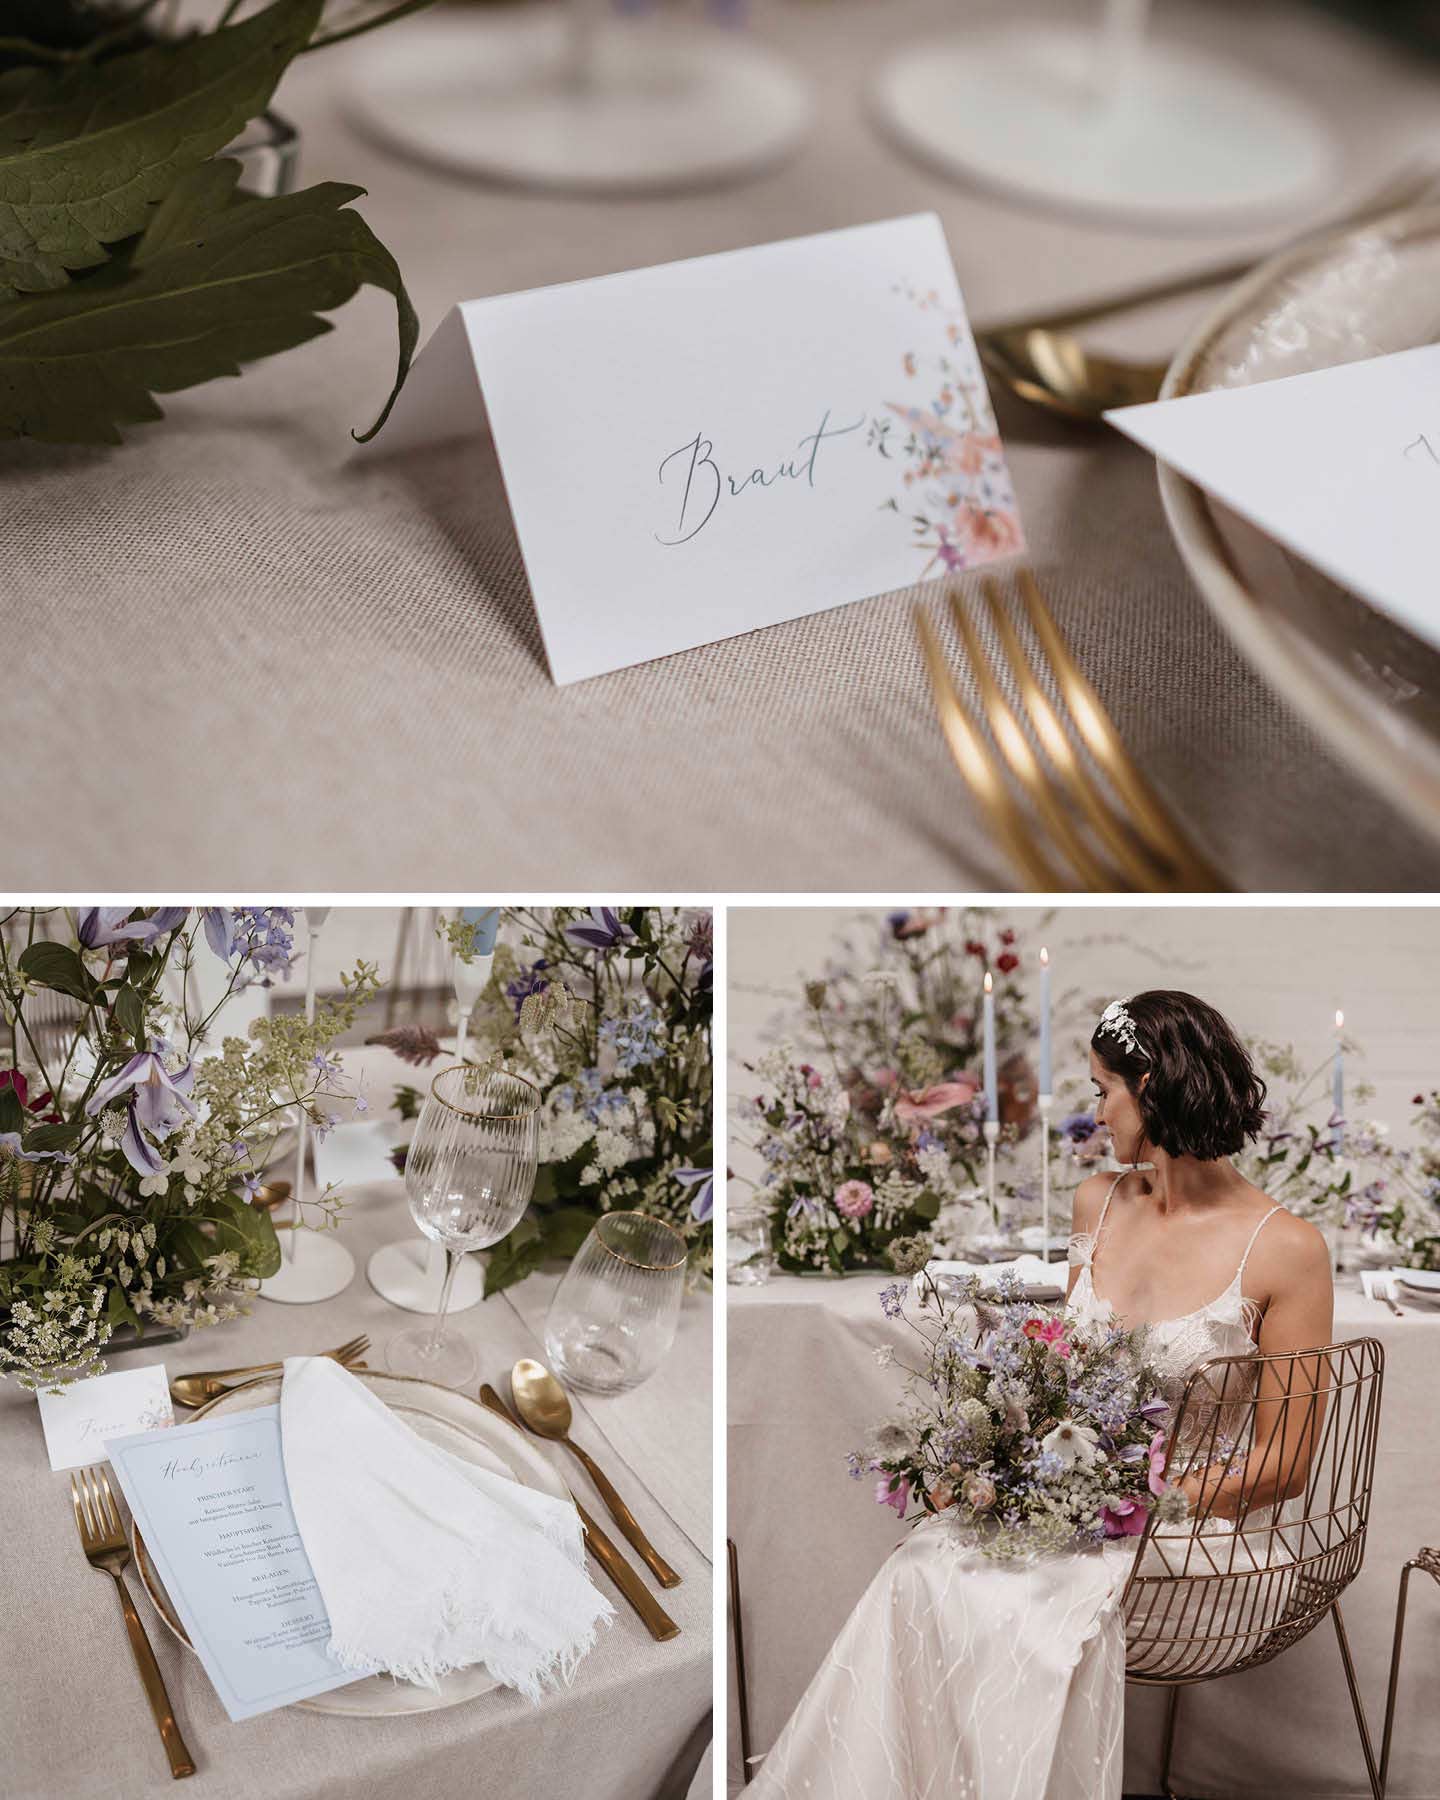 Liebevolle Details der Floral Chic Hochzeitstafel